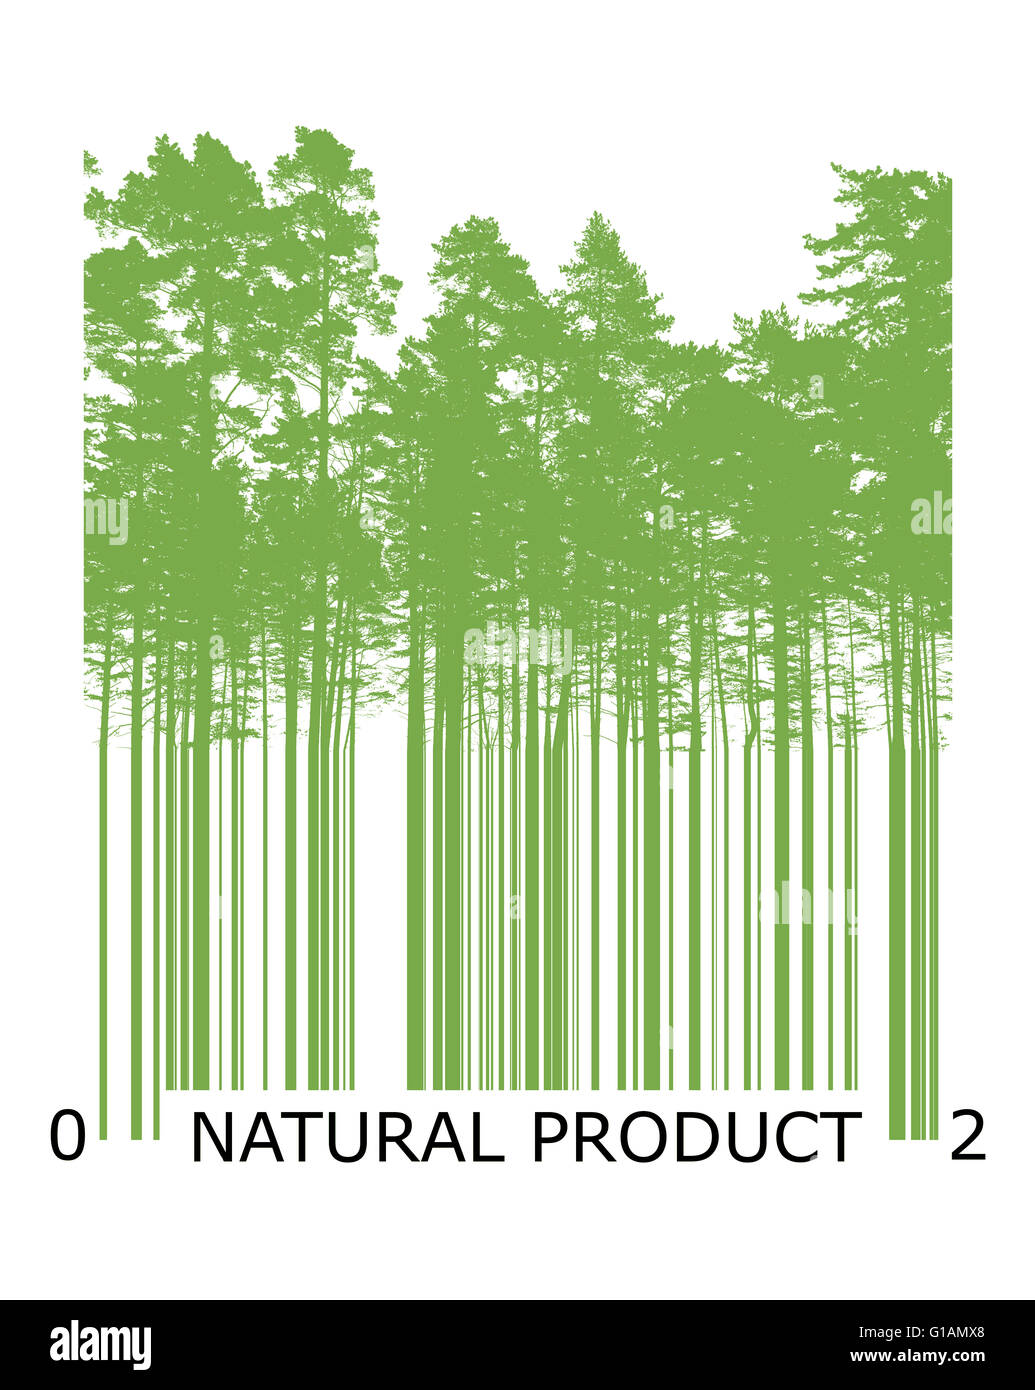 Code barre de produit naturel concept avec silhouettes d'arbres verts Banque D'Images